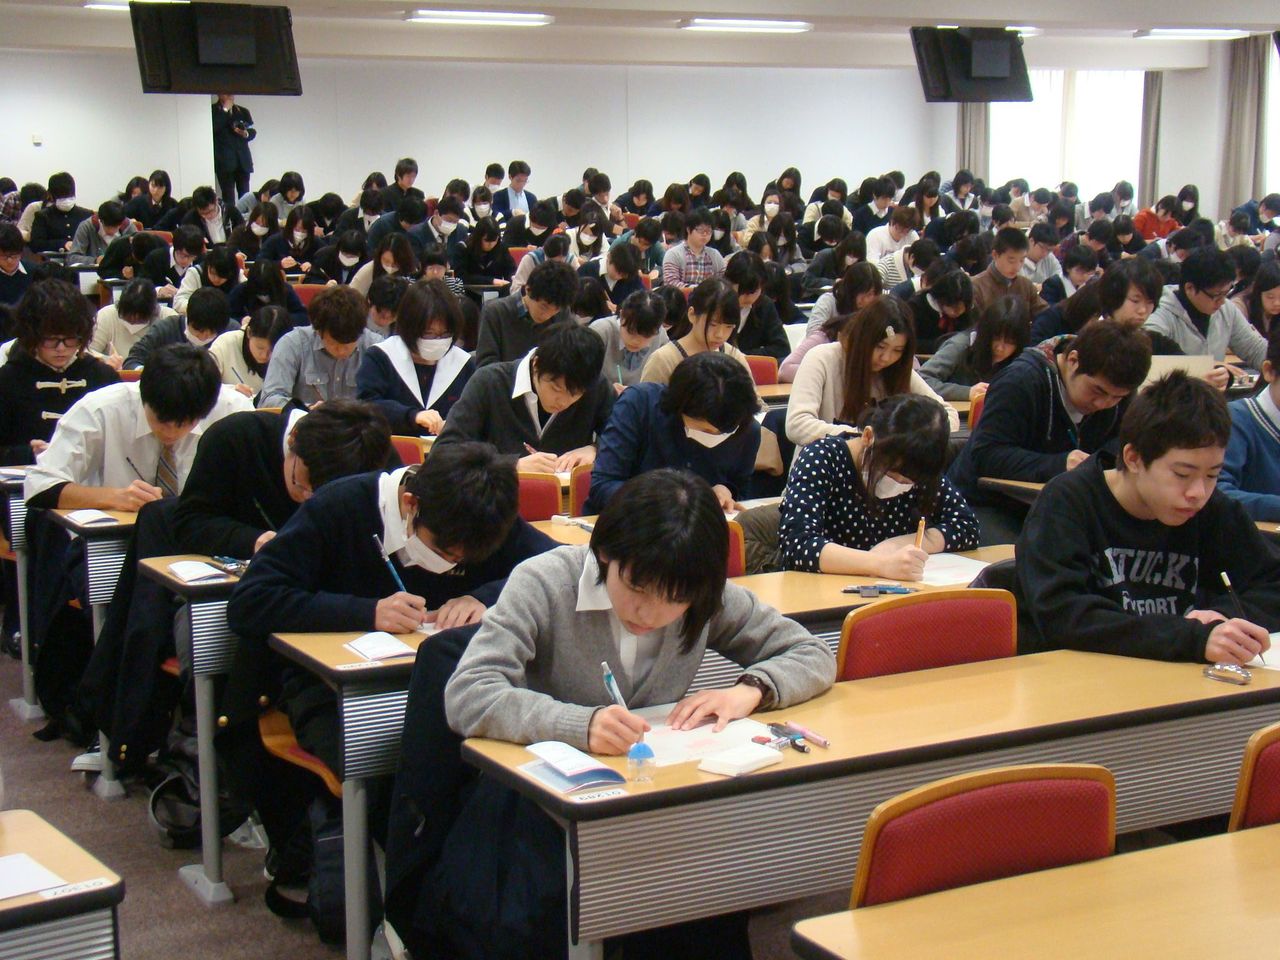 ブースポブログ:入学試験 - livedoor Blog（ブログ）